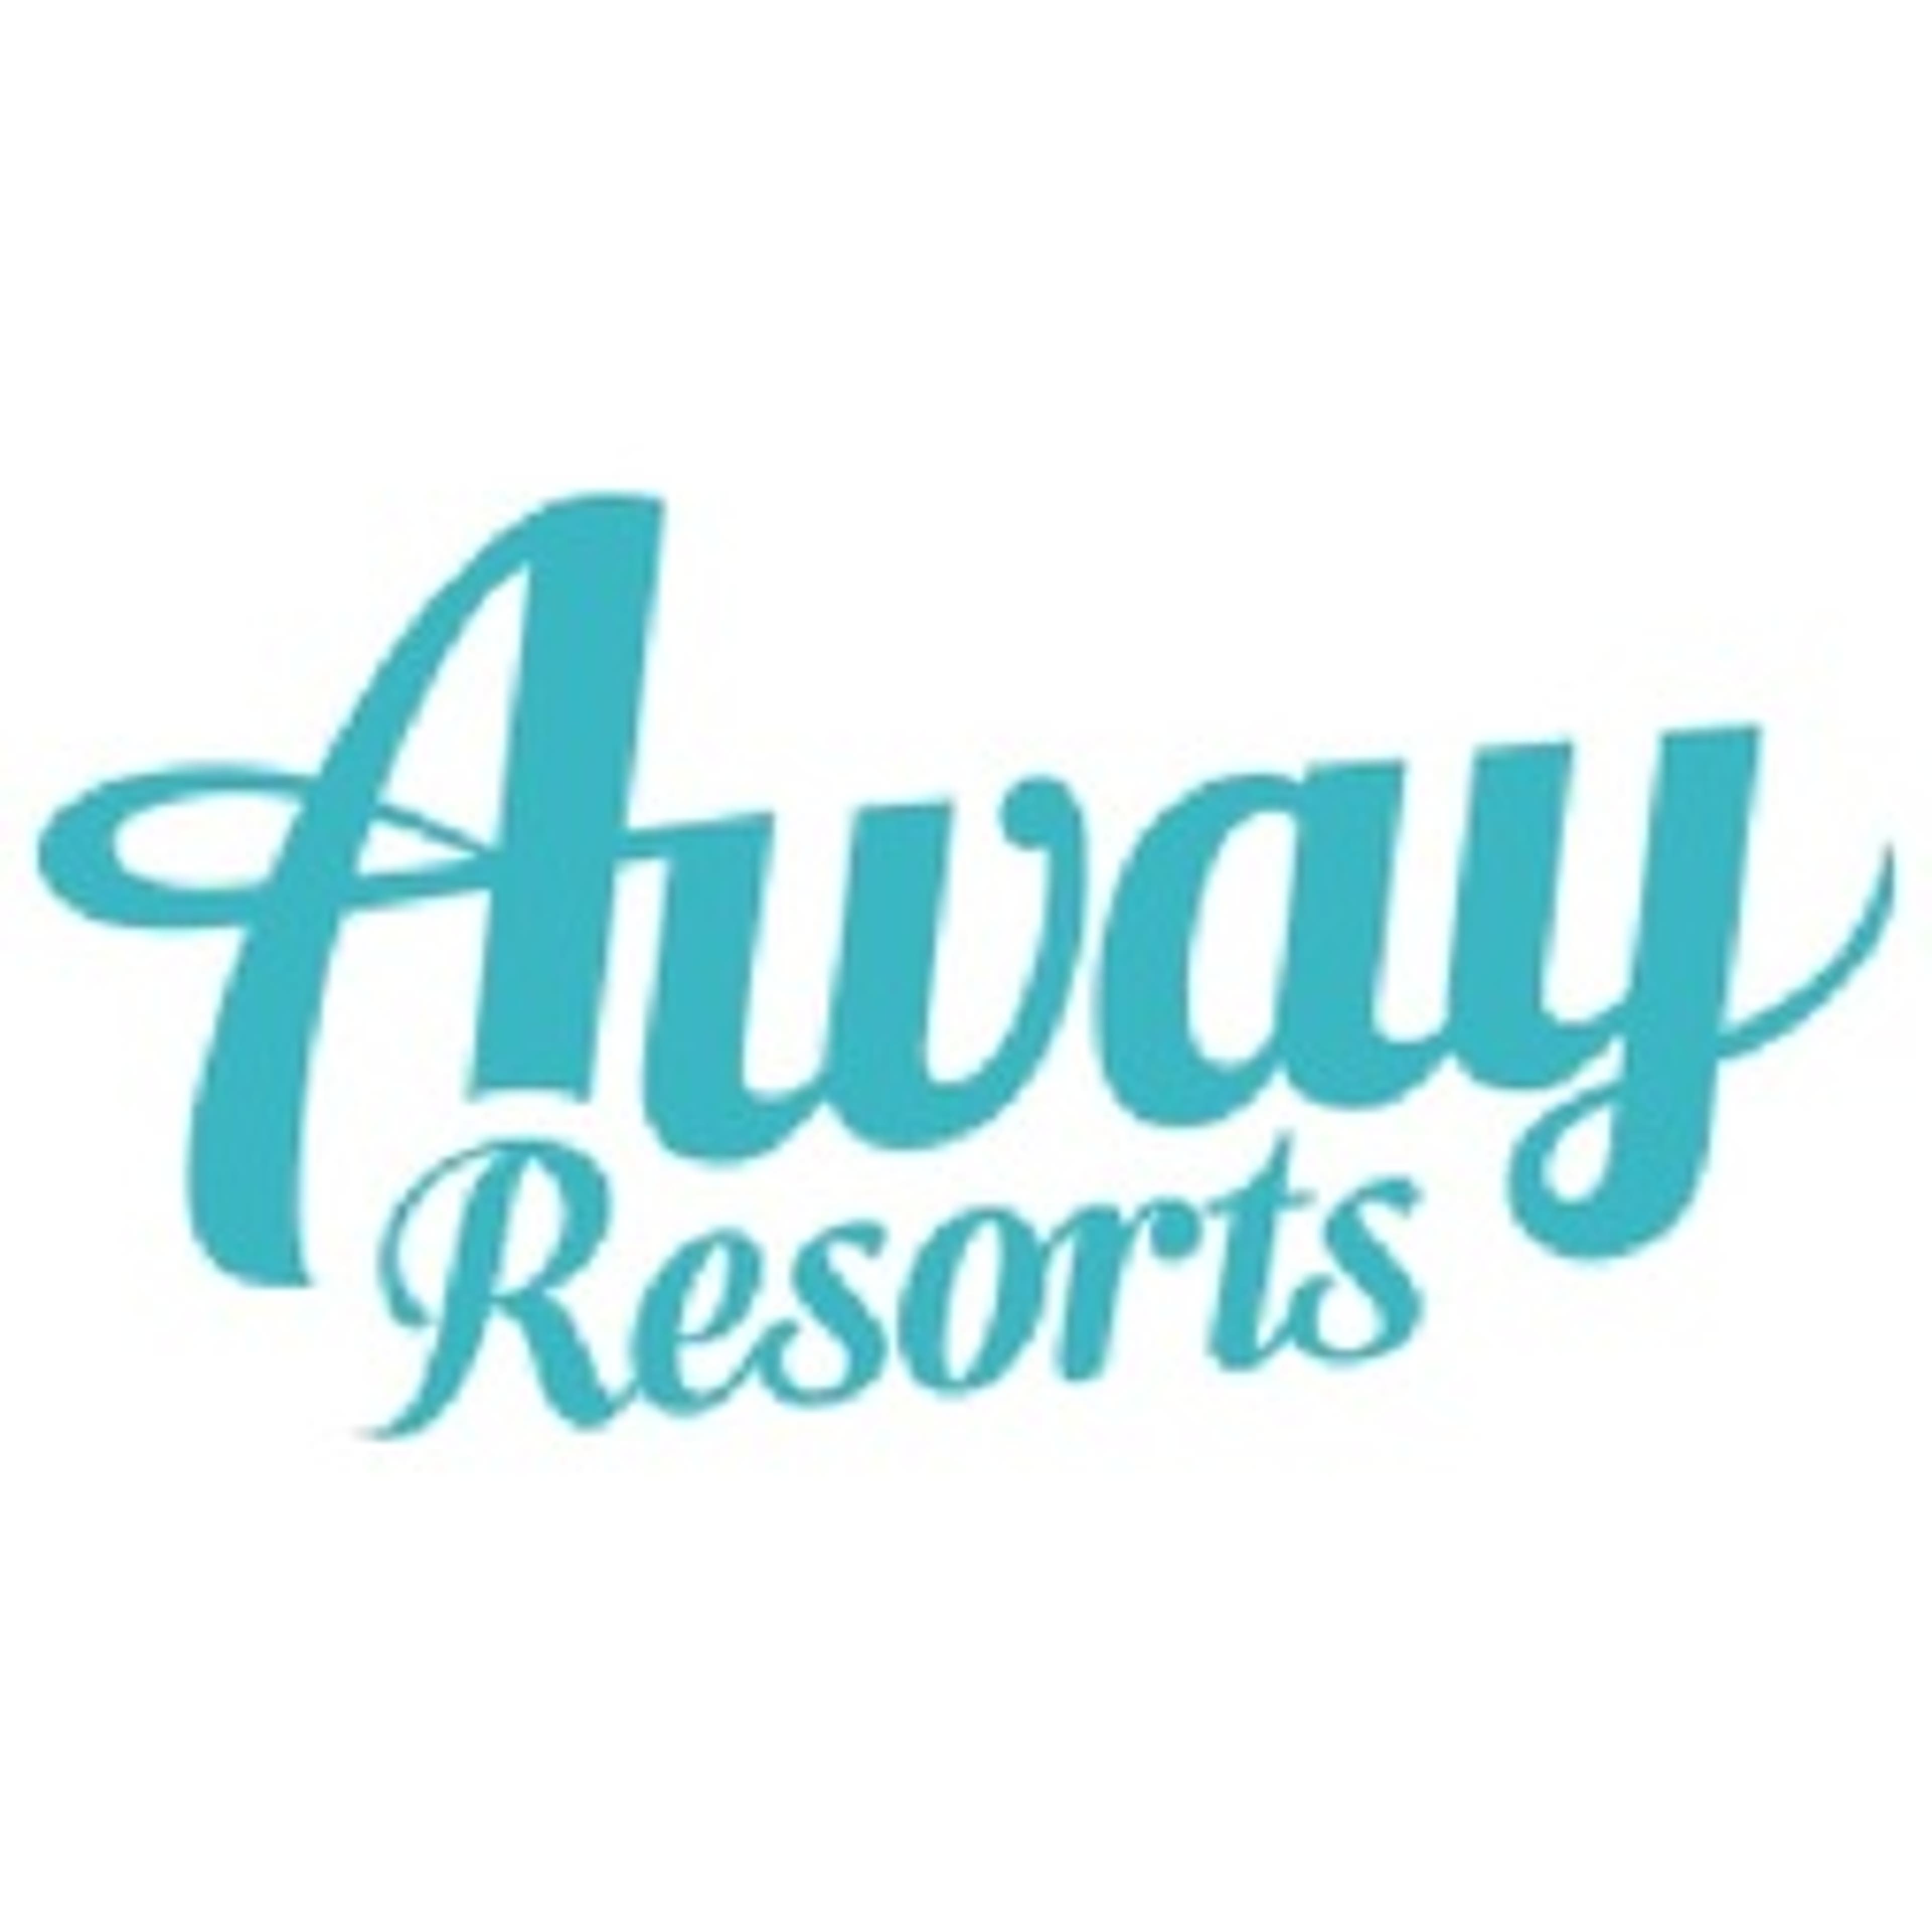  Away Resorts 